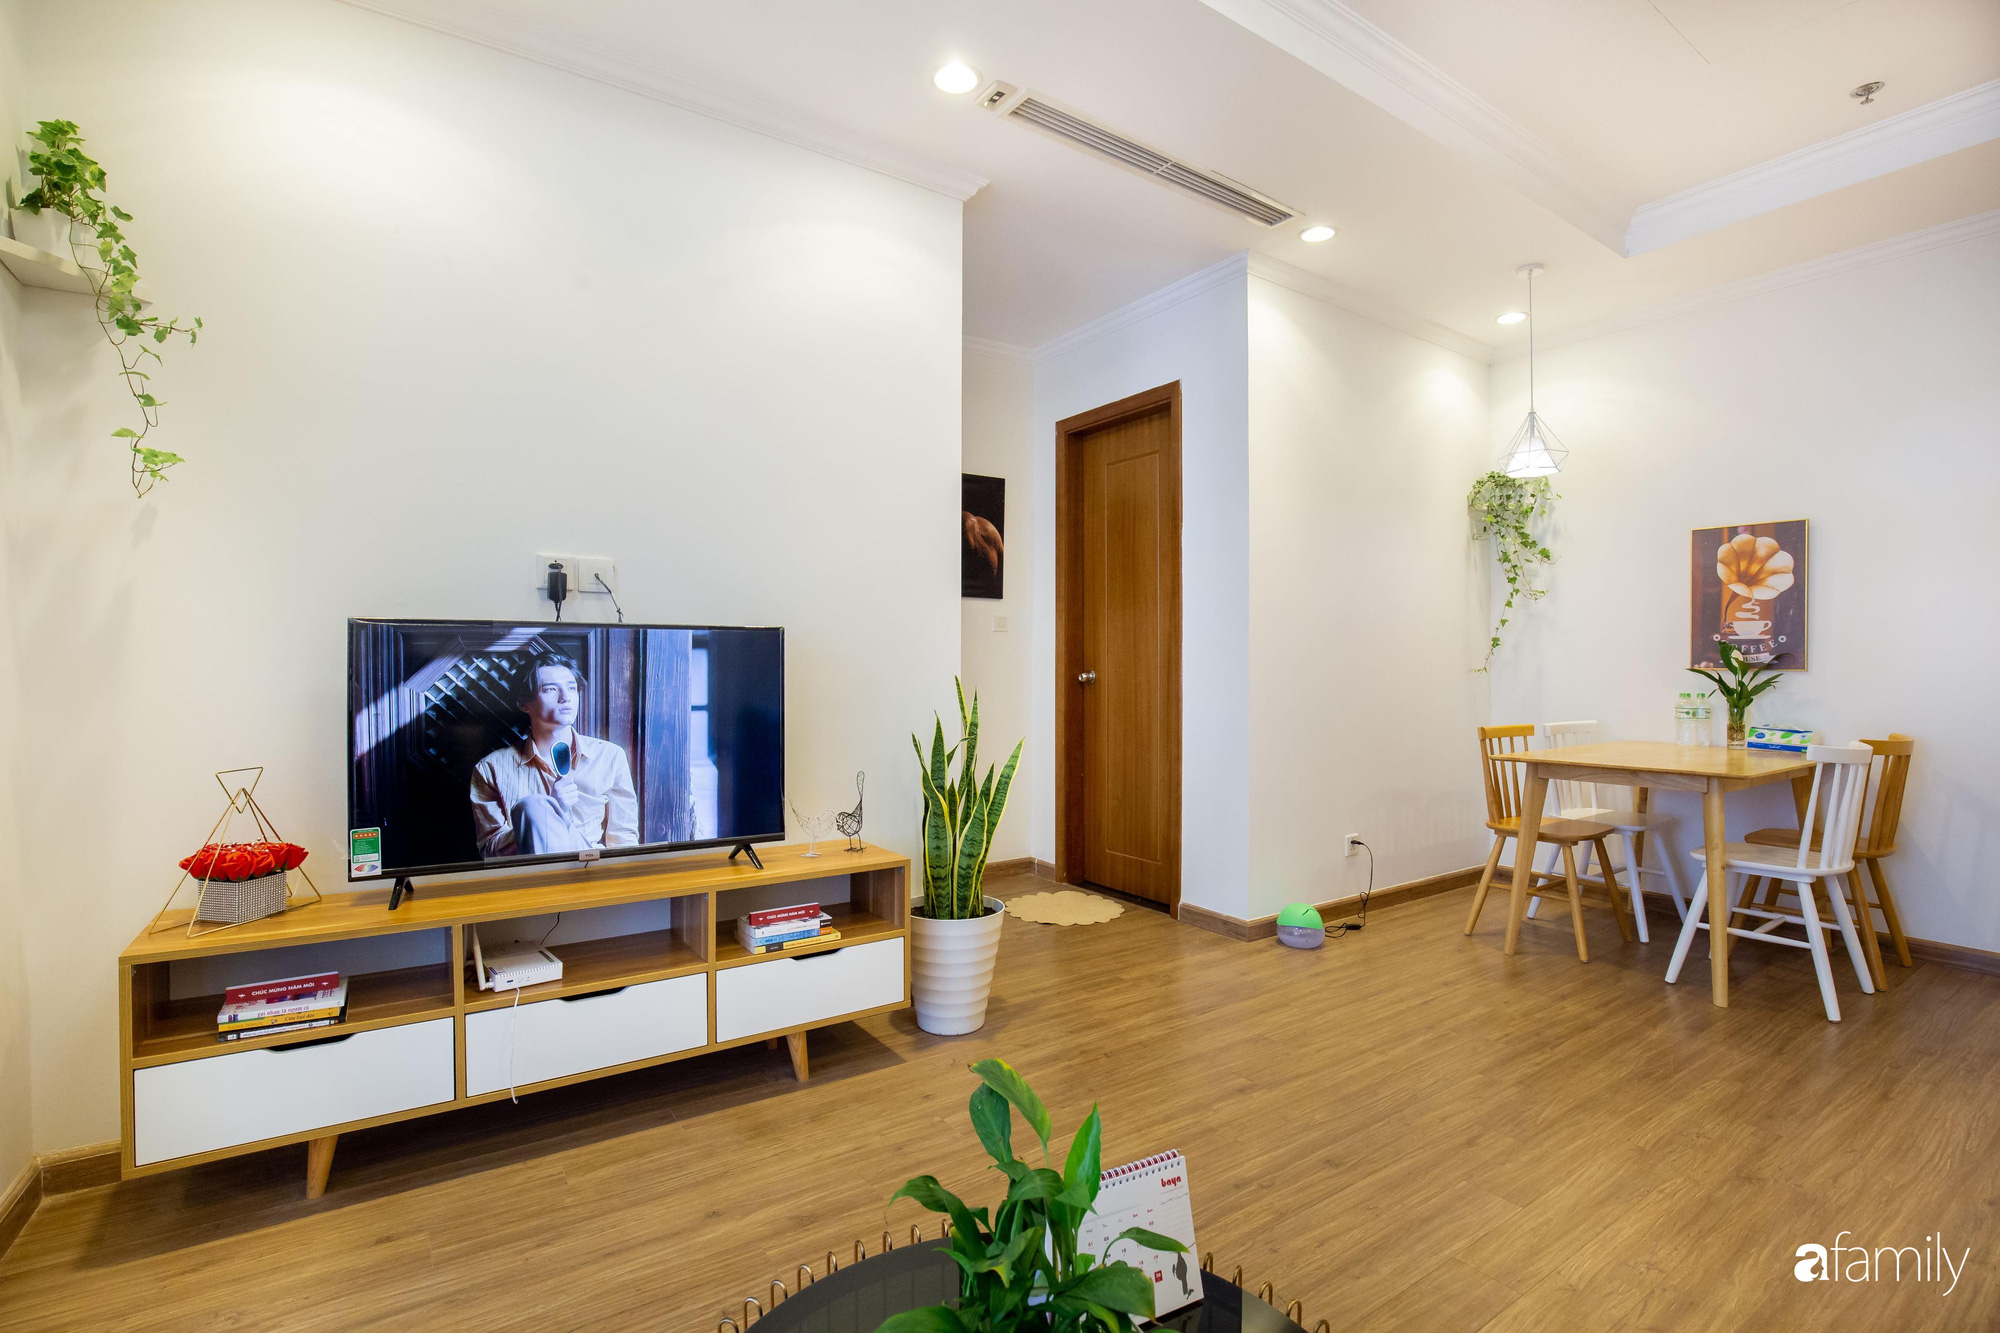 Thiết kế đơn giản với nội thất tiện nghi, căn hộ 53m2 trên tầng cao khiến nhiều người ao ước sở hữu ở Hà Nội - Ảnh 1.